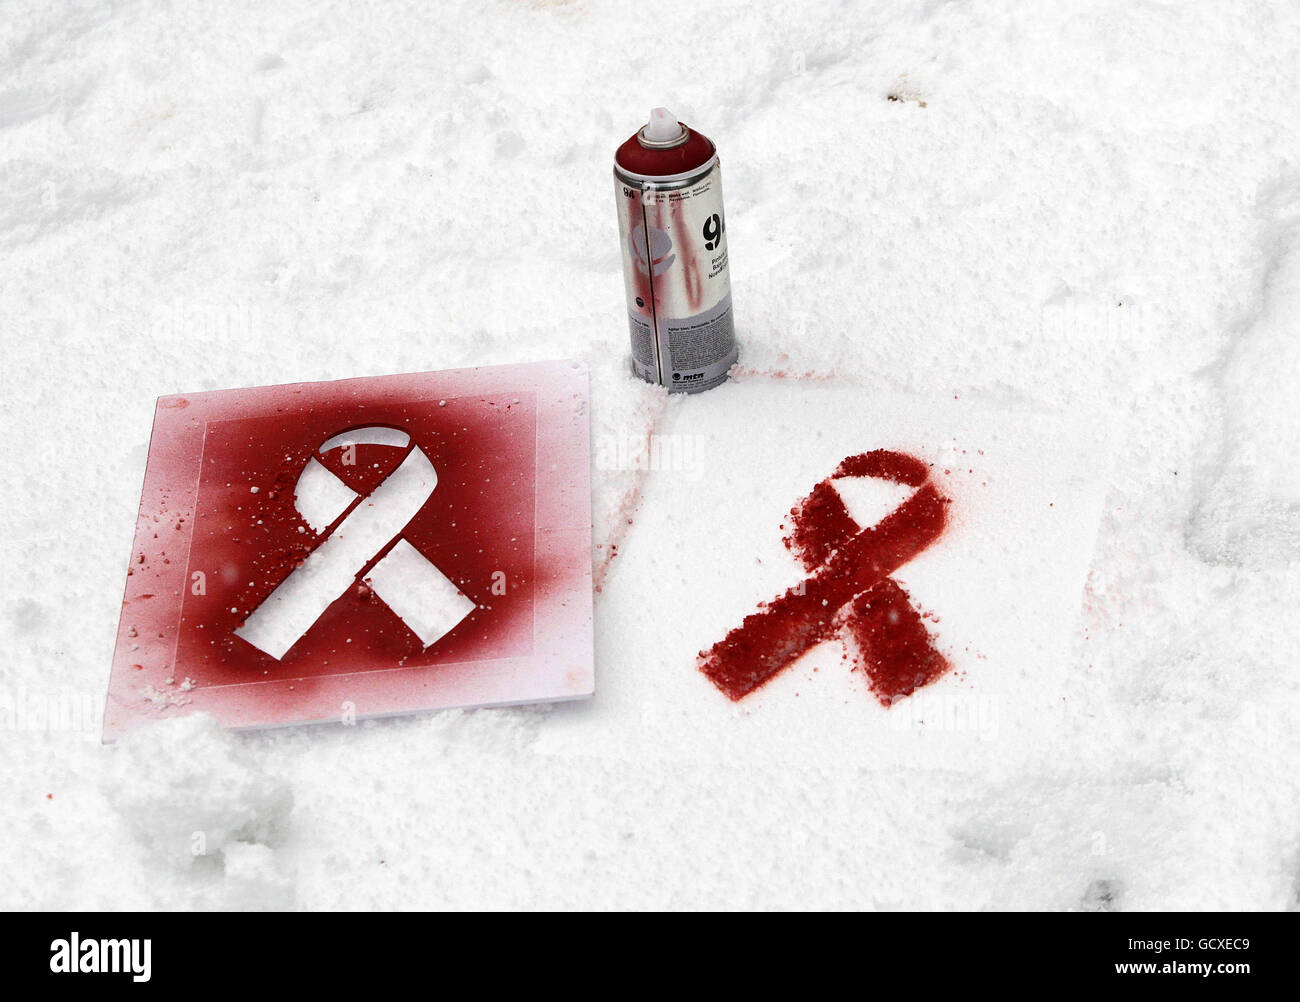 Eine Sprühdose und eine Schablone liegen im Schnee von 'Artivisten' will St Leger, der zum Welt-Aids-Tag im Stadtzentrum von Dublin rote Bänder in den Schnee gesprüht hat. Stockfoto